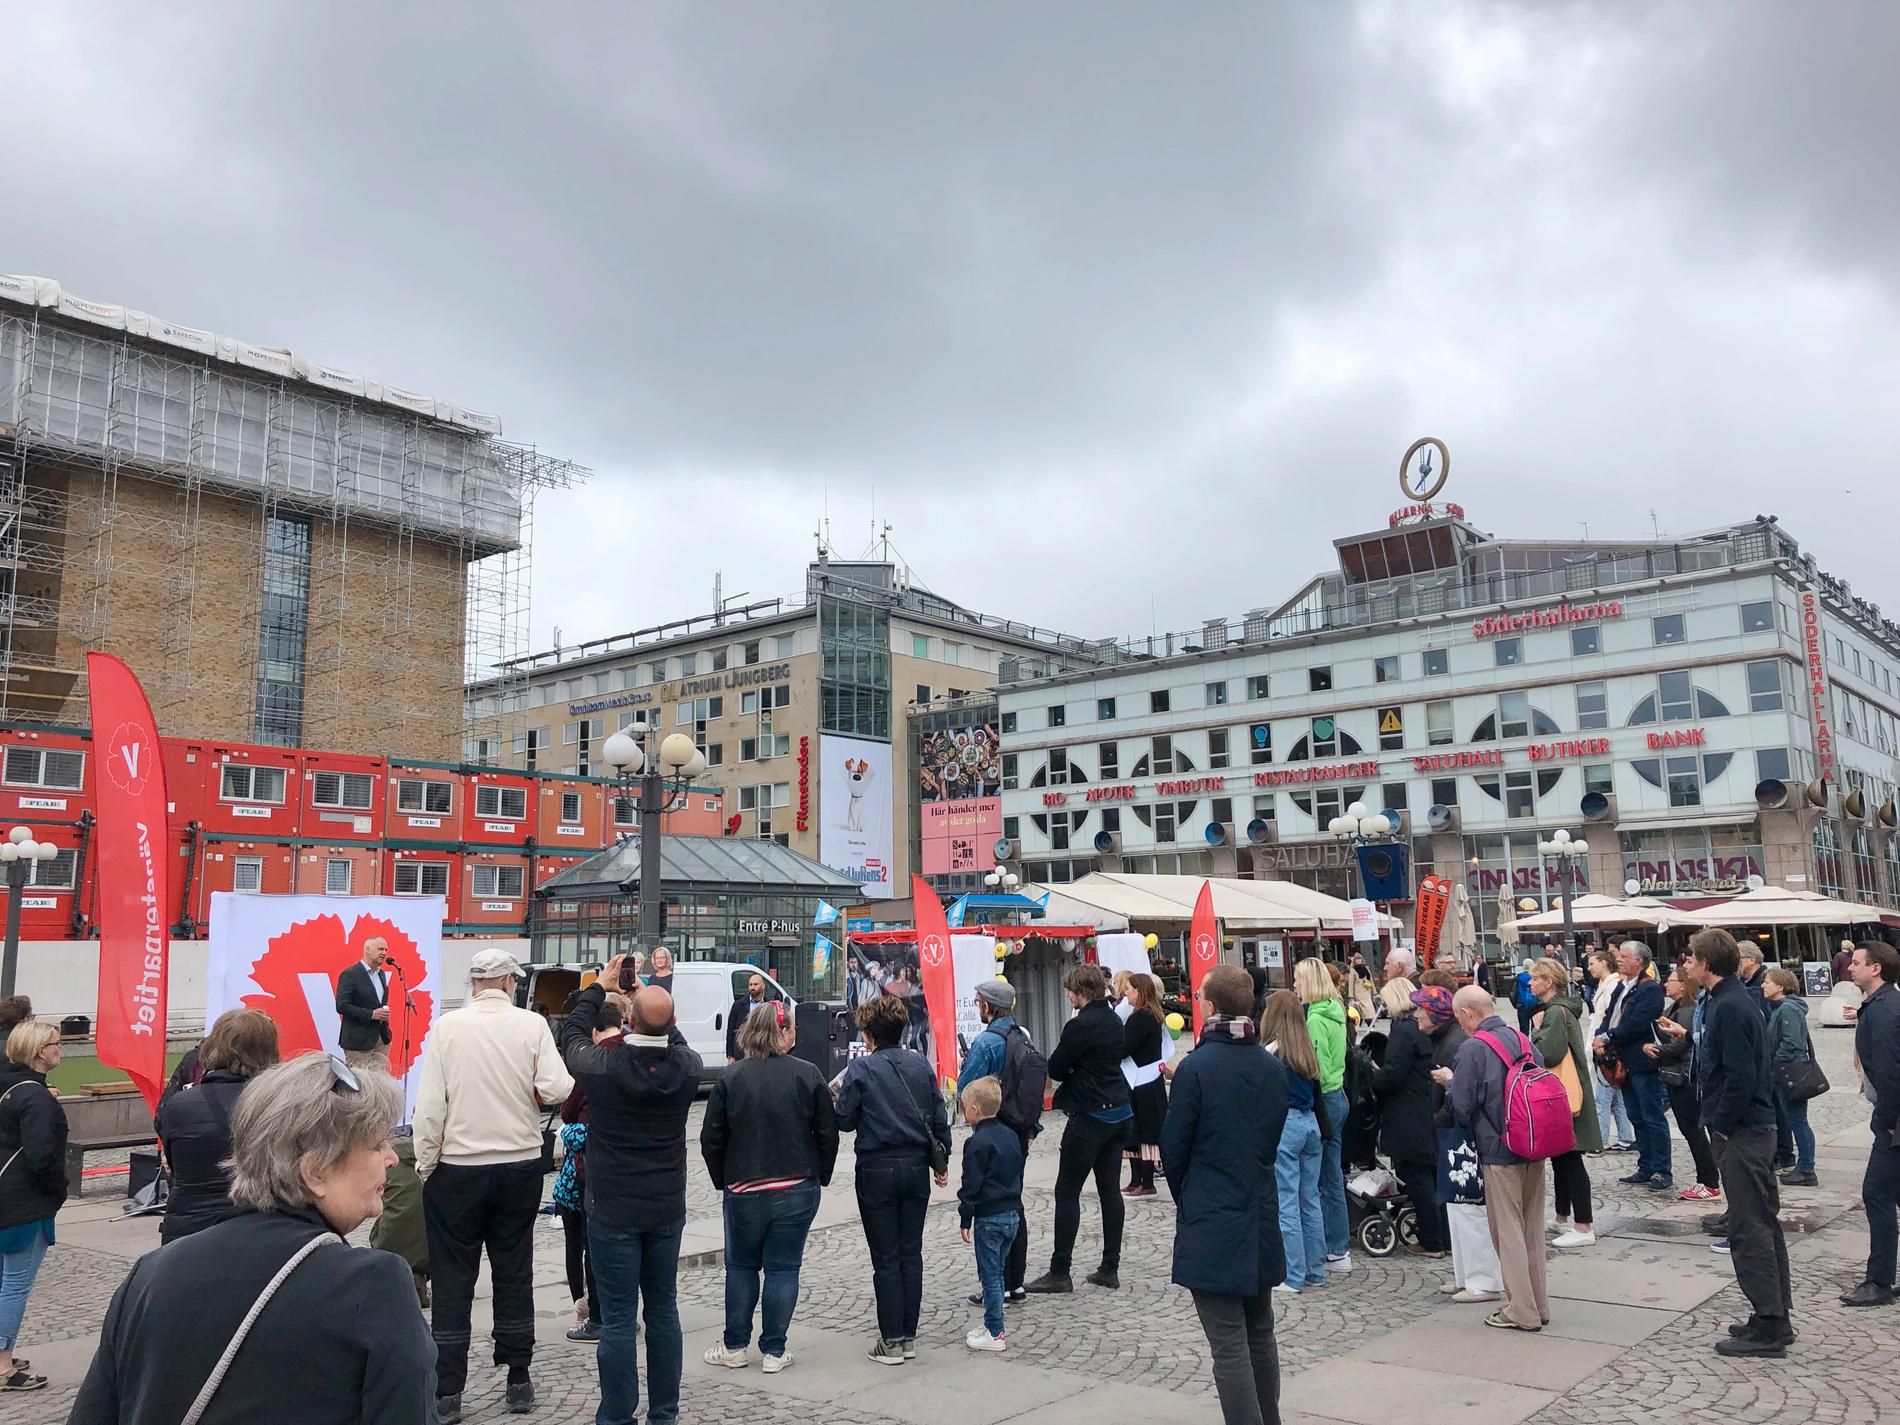 Väljare som slutit upp på Vänsterpartiets valspurt inför EU-valet på Medborgarplatsen i Stockholm.